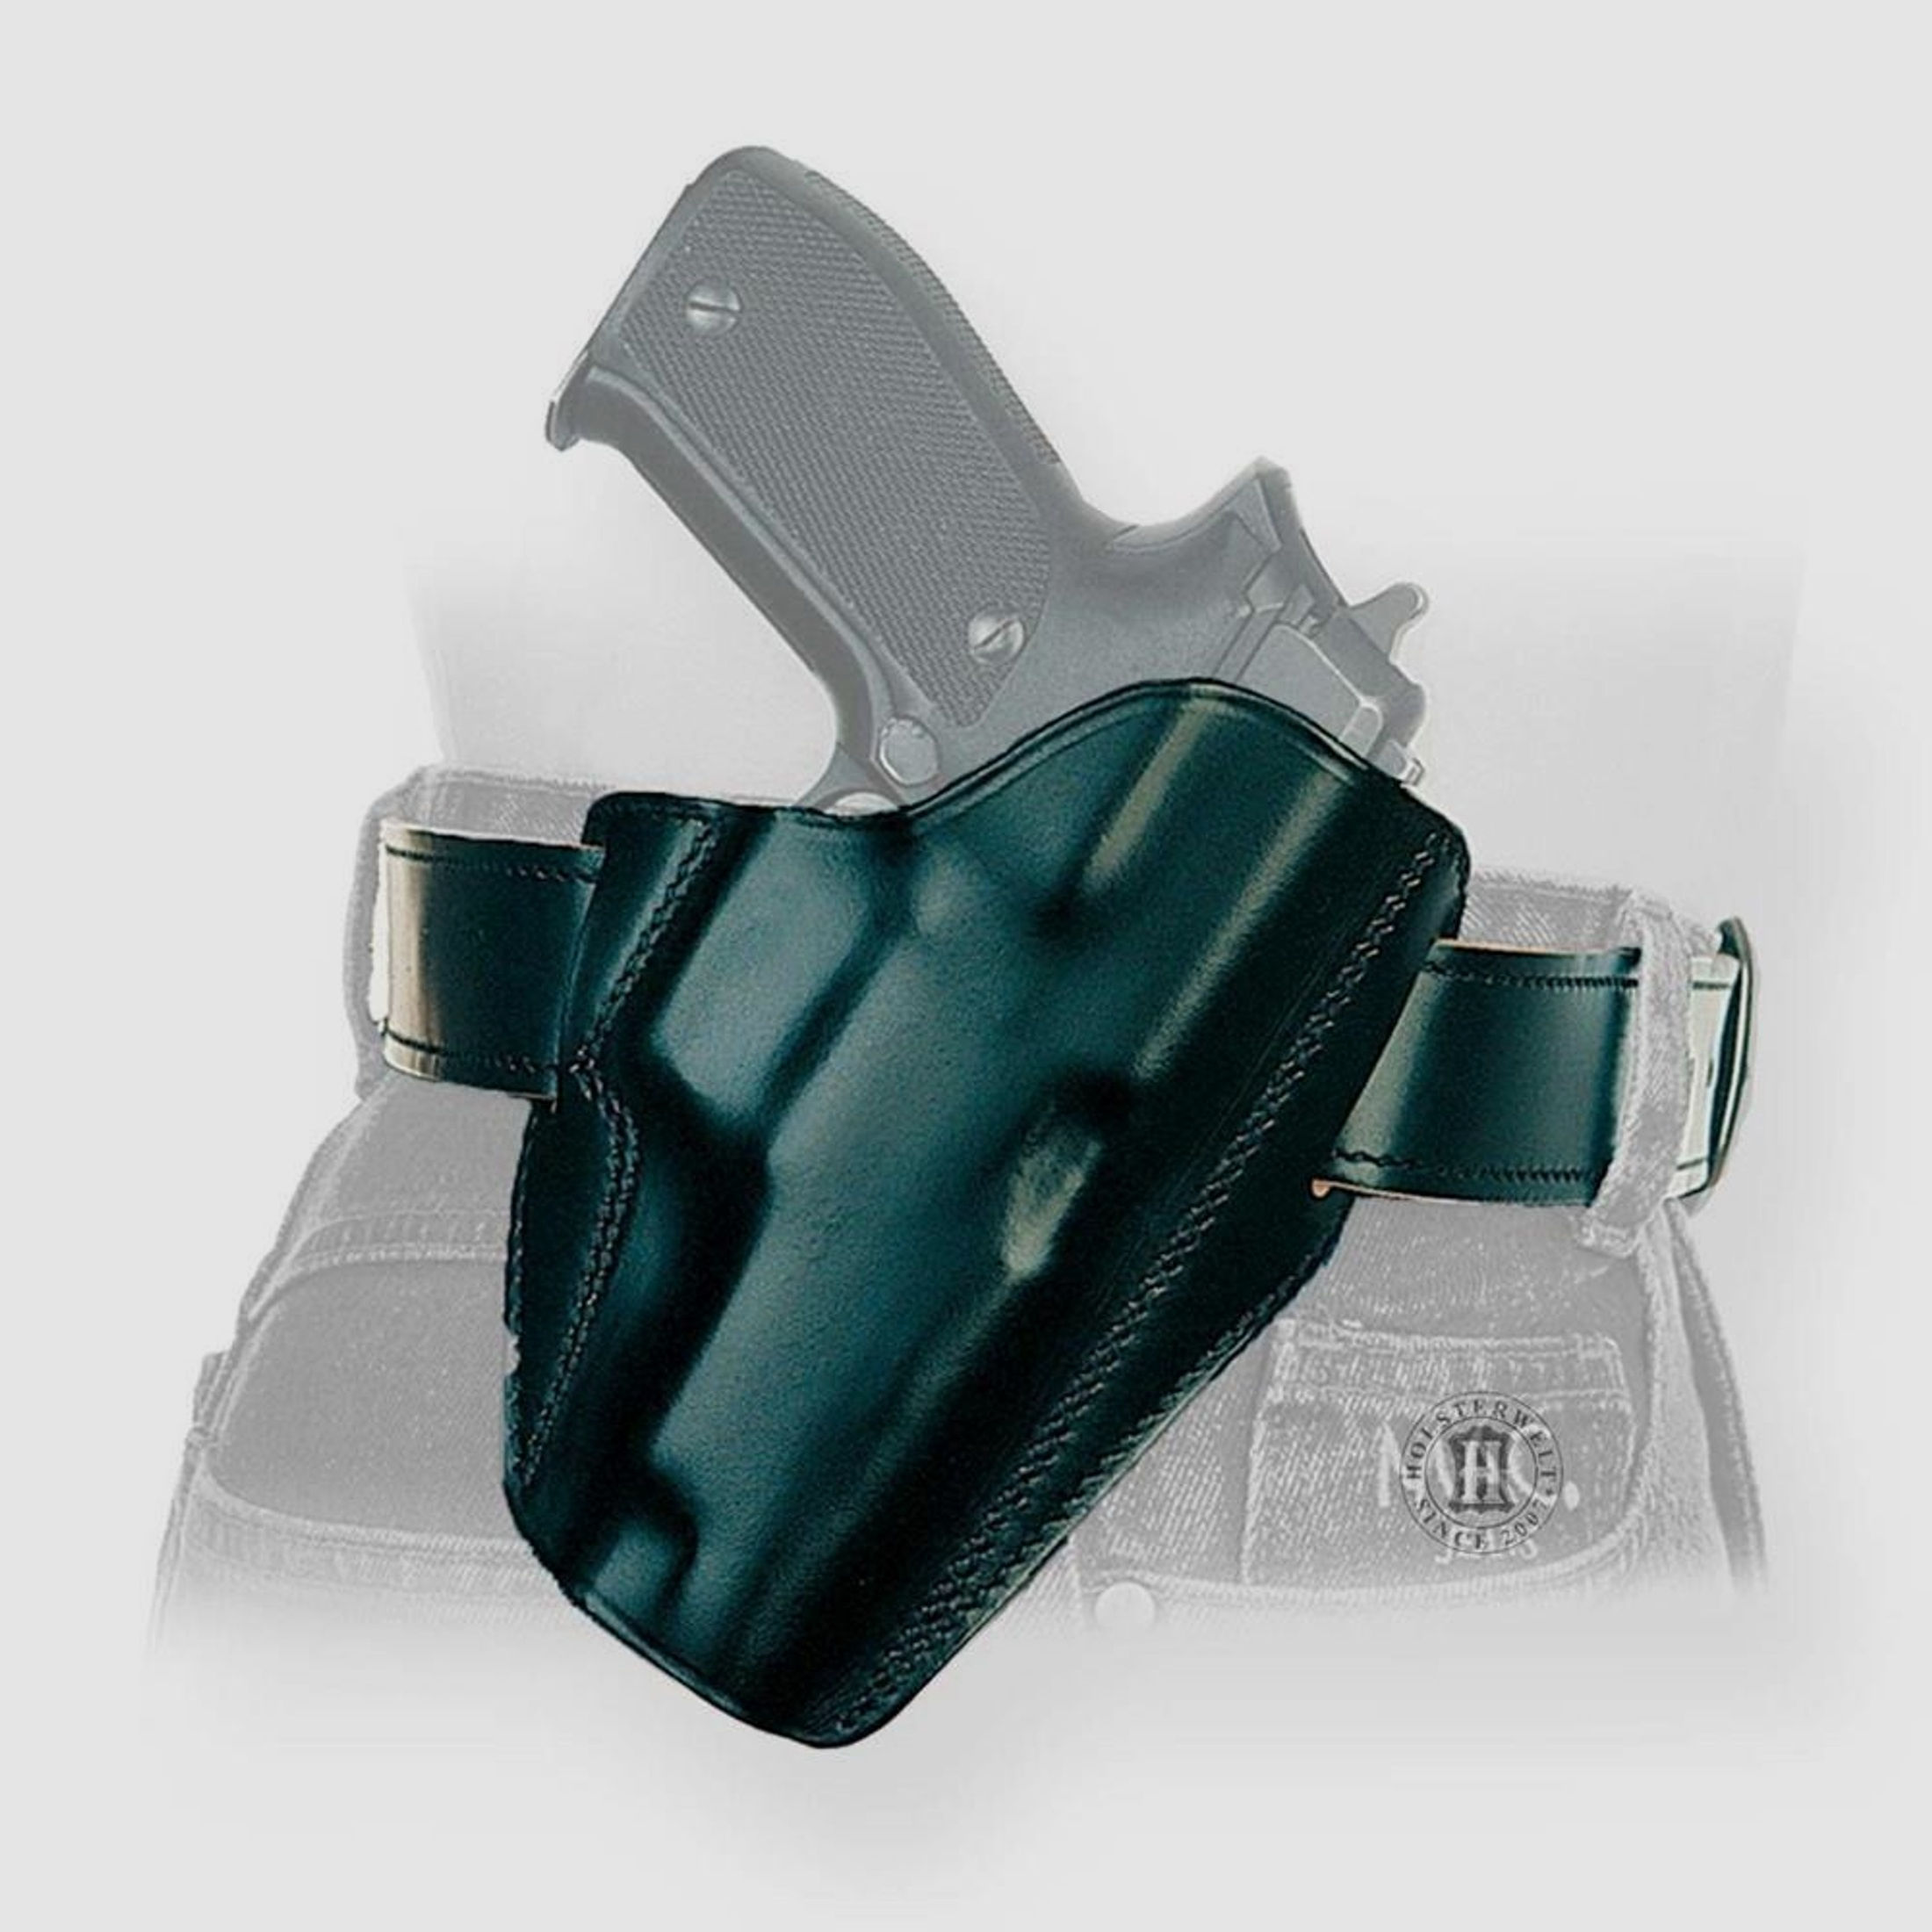 Schnellziehholster LIGHTNING "FBI" Walther P22 / P22Q-Rechtshänder-Schwarz